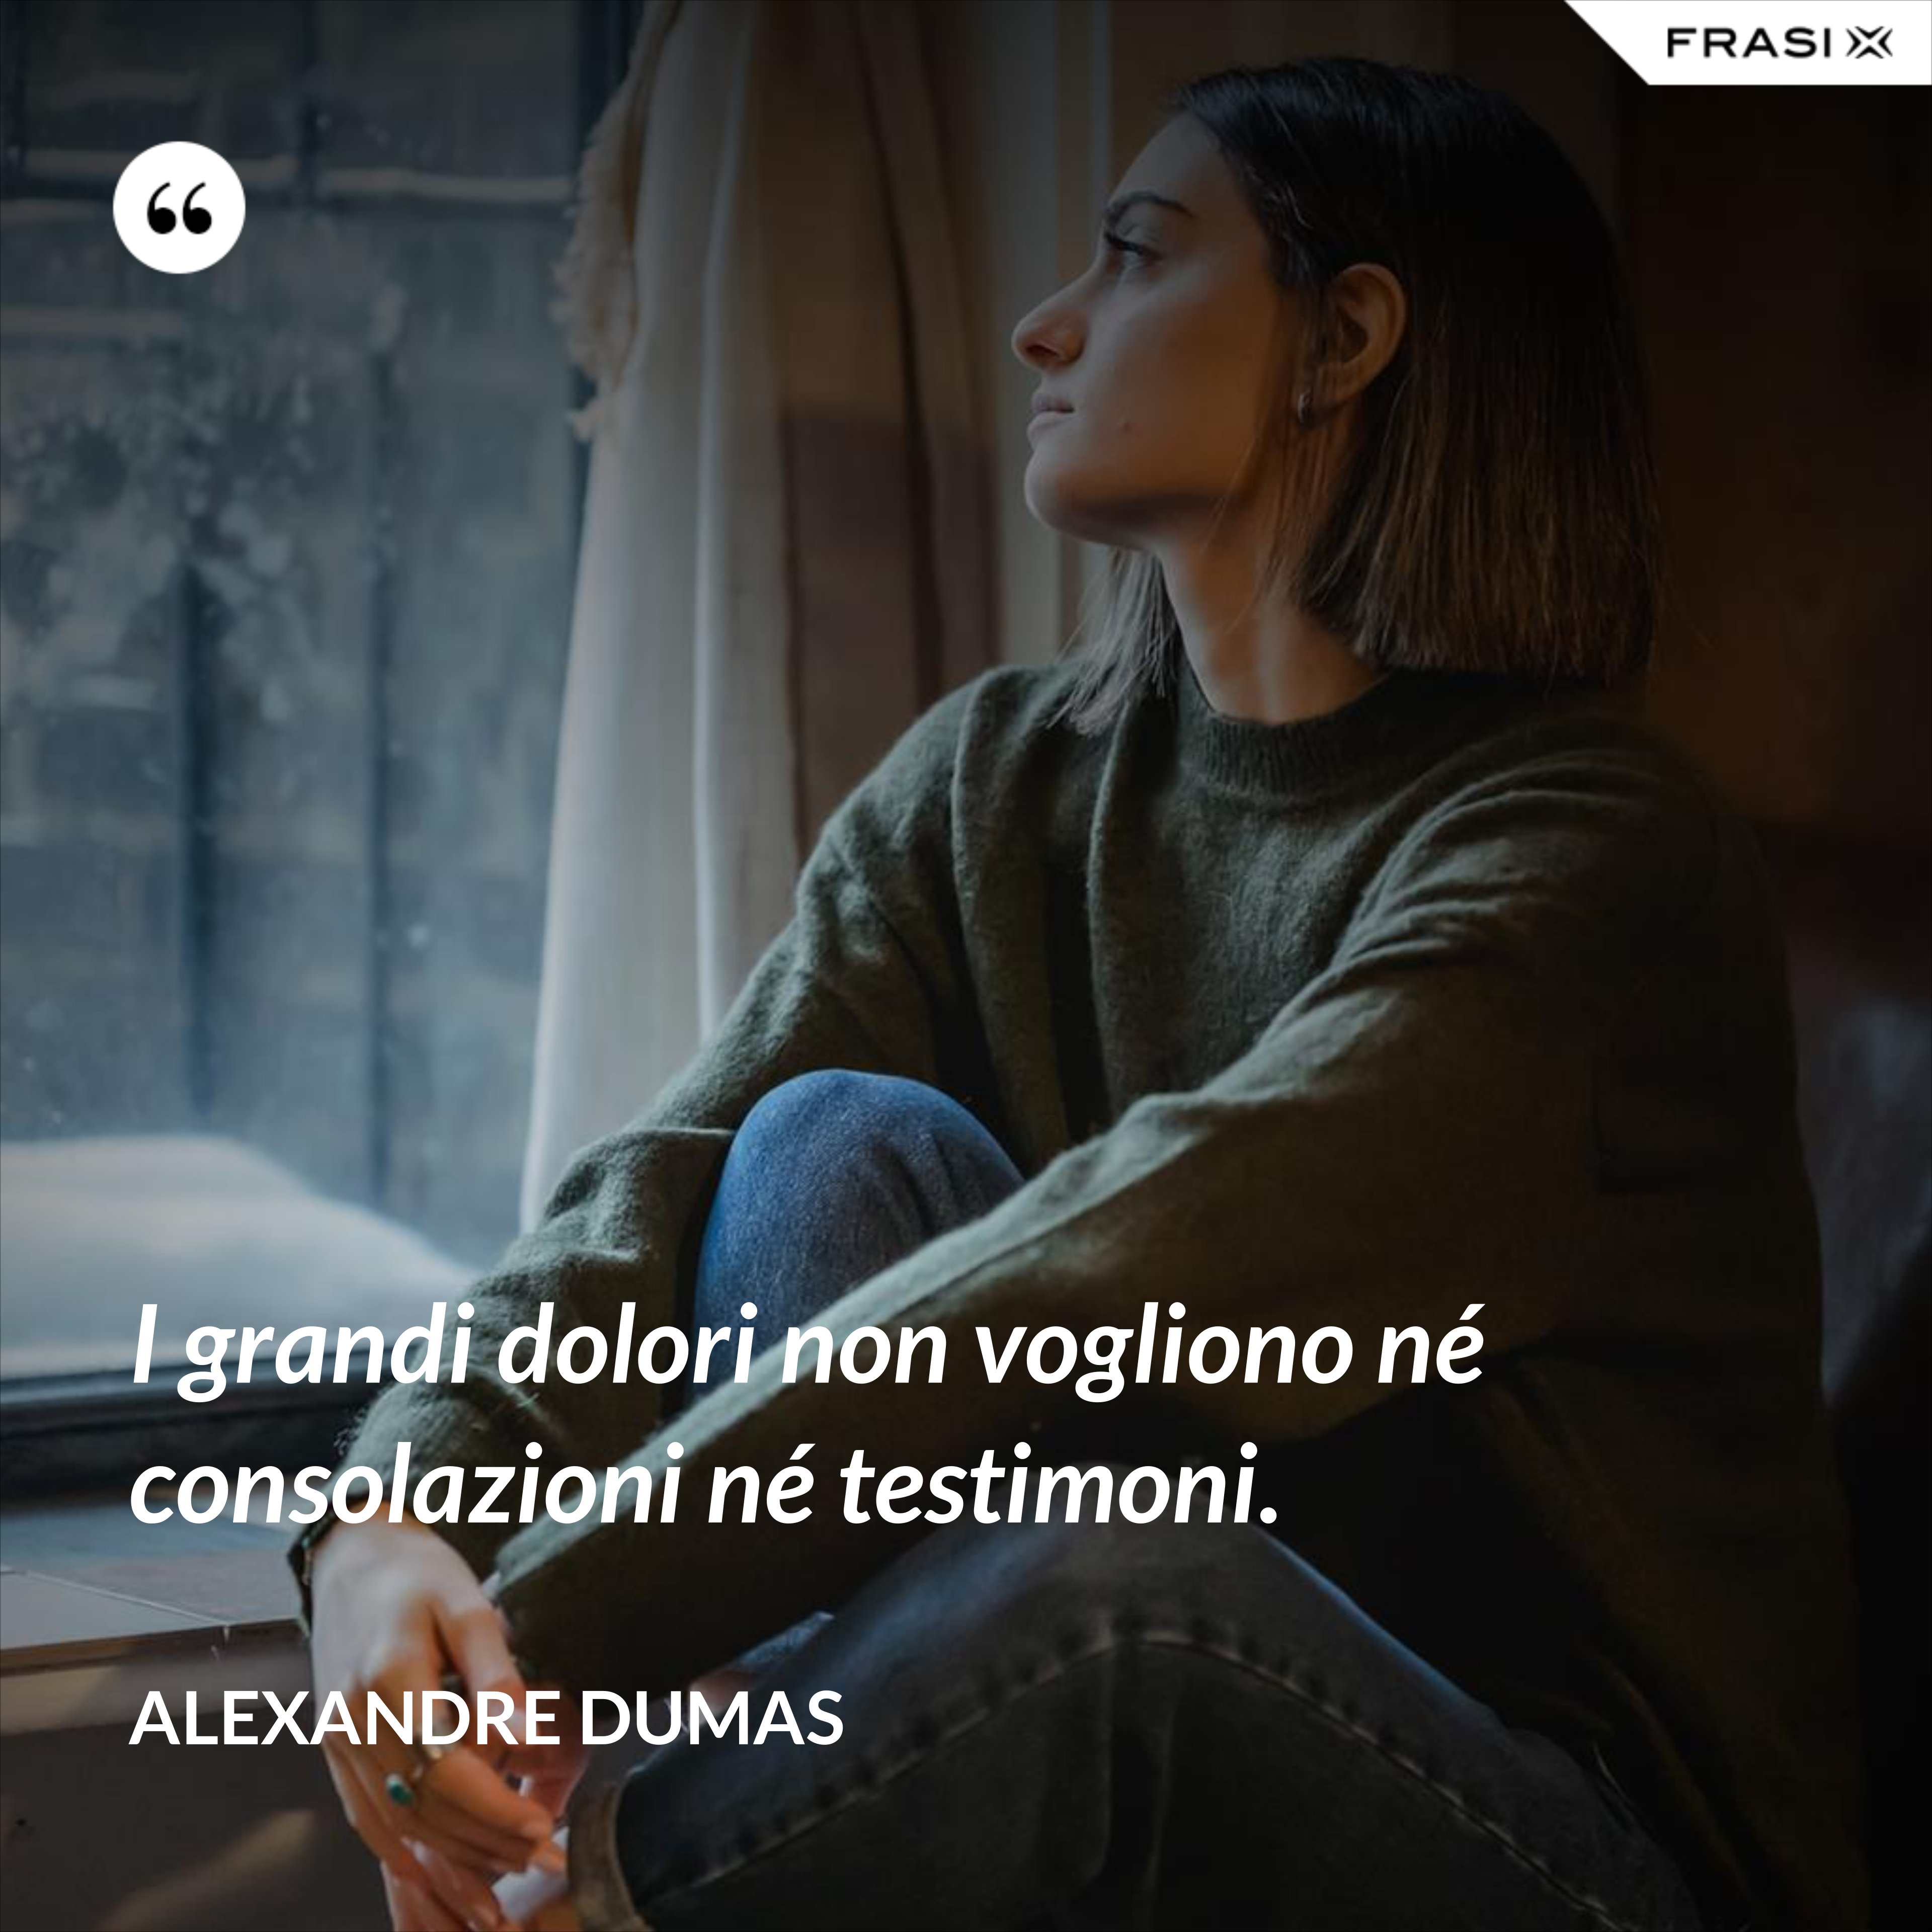 I grandi dolori non vogliono né consolazioni né testimoni. - Alexandre Dumas